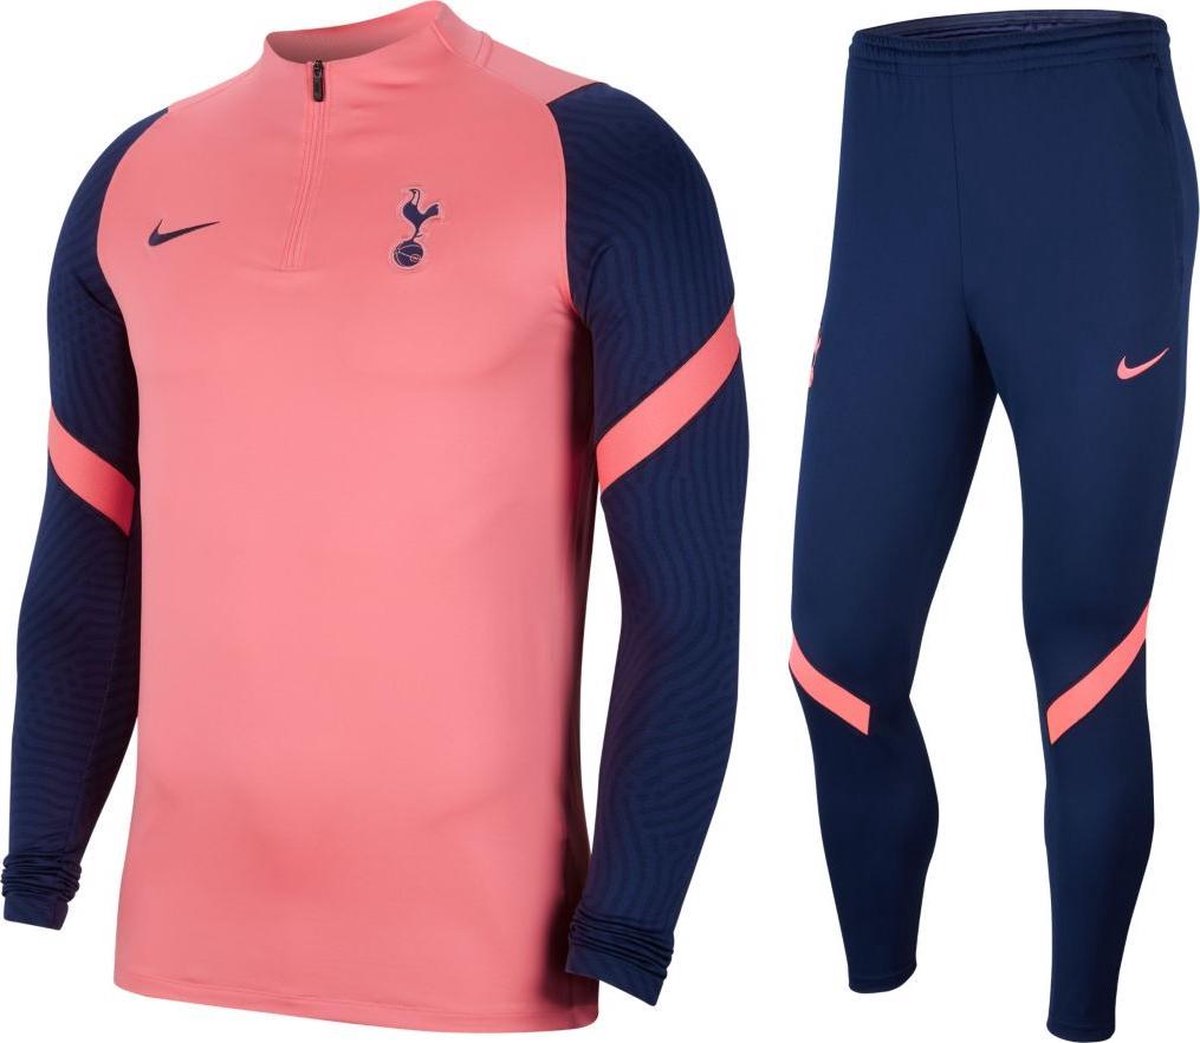 NIKE Tottenham Hotspur Trainingspak 2020-2021 pink - blue | bol.com